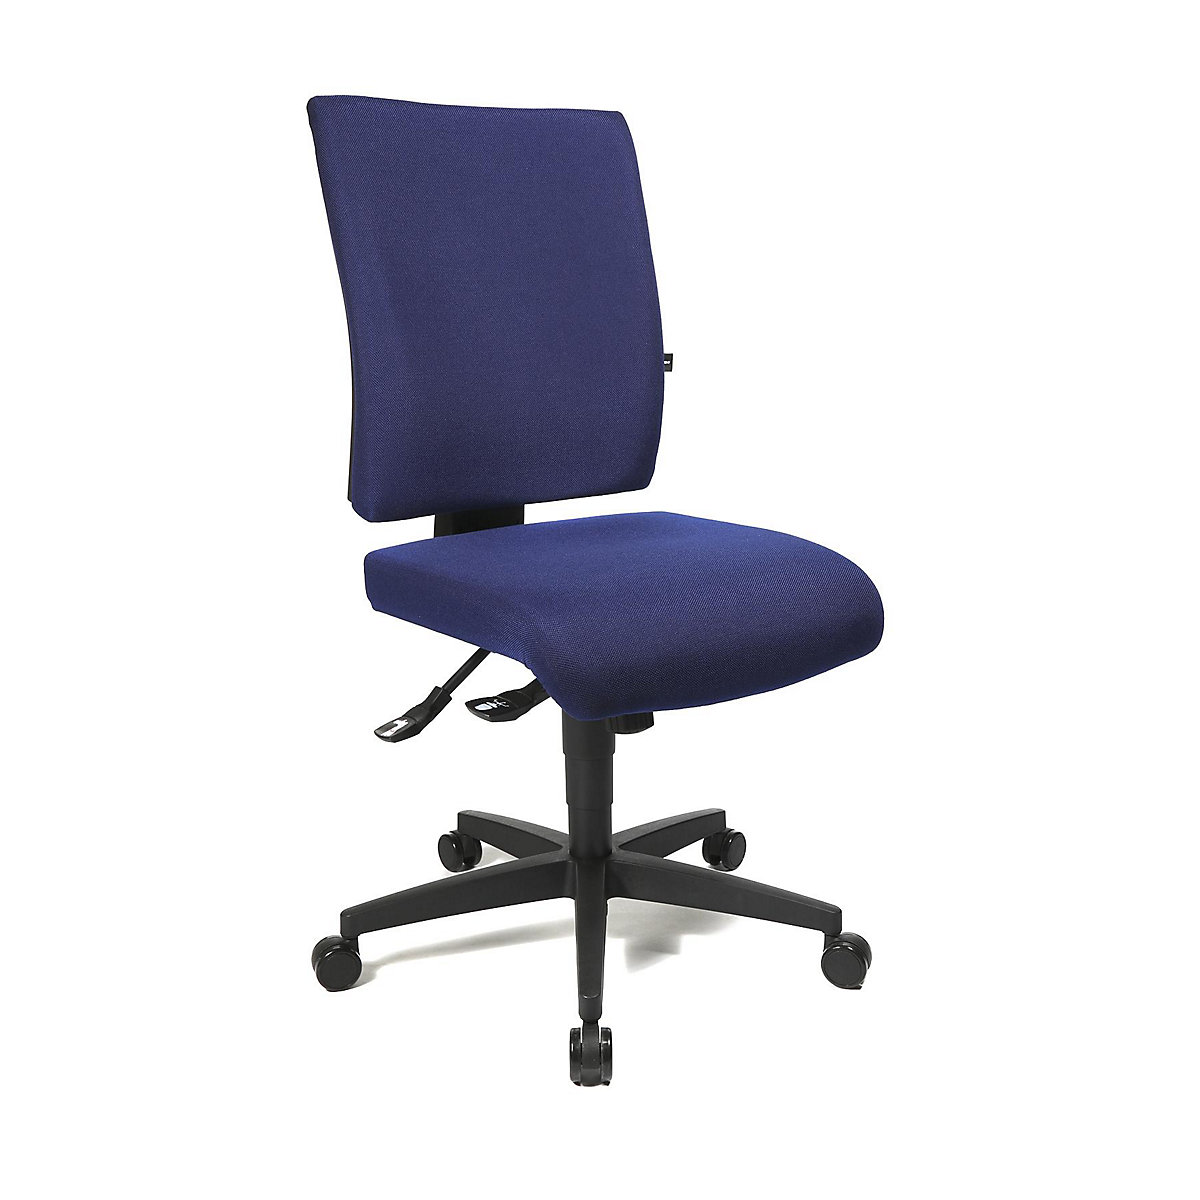 Cadeira giratória de escritório COMFORT – Topstar, encosto regulável em altura, forro azul royal-23